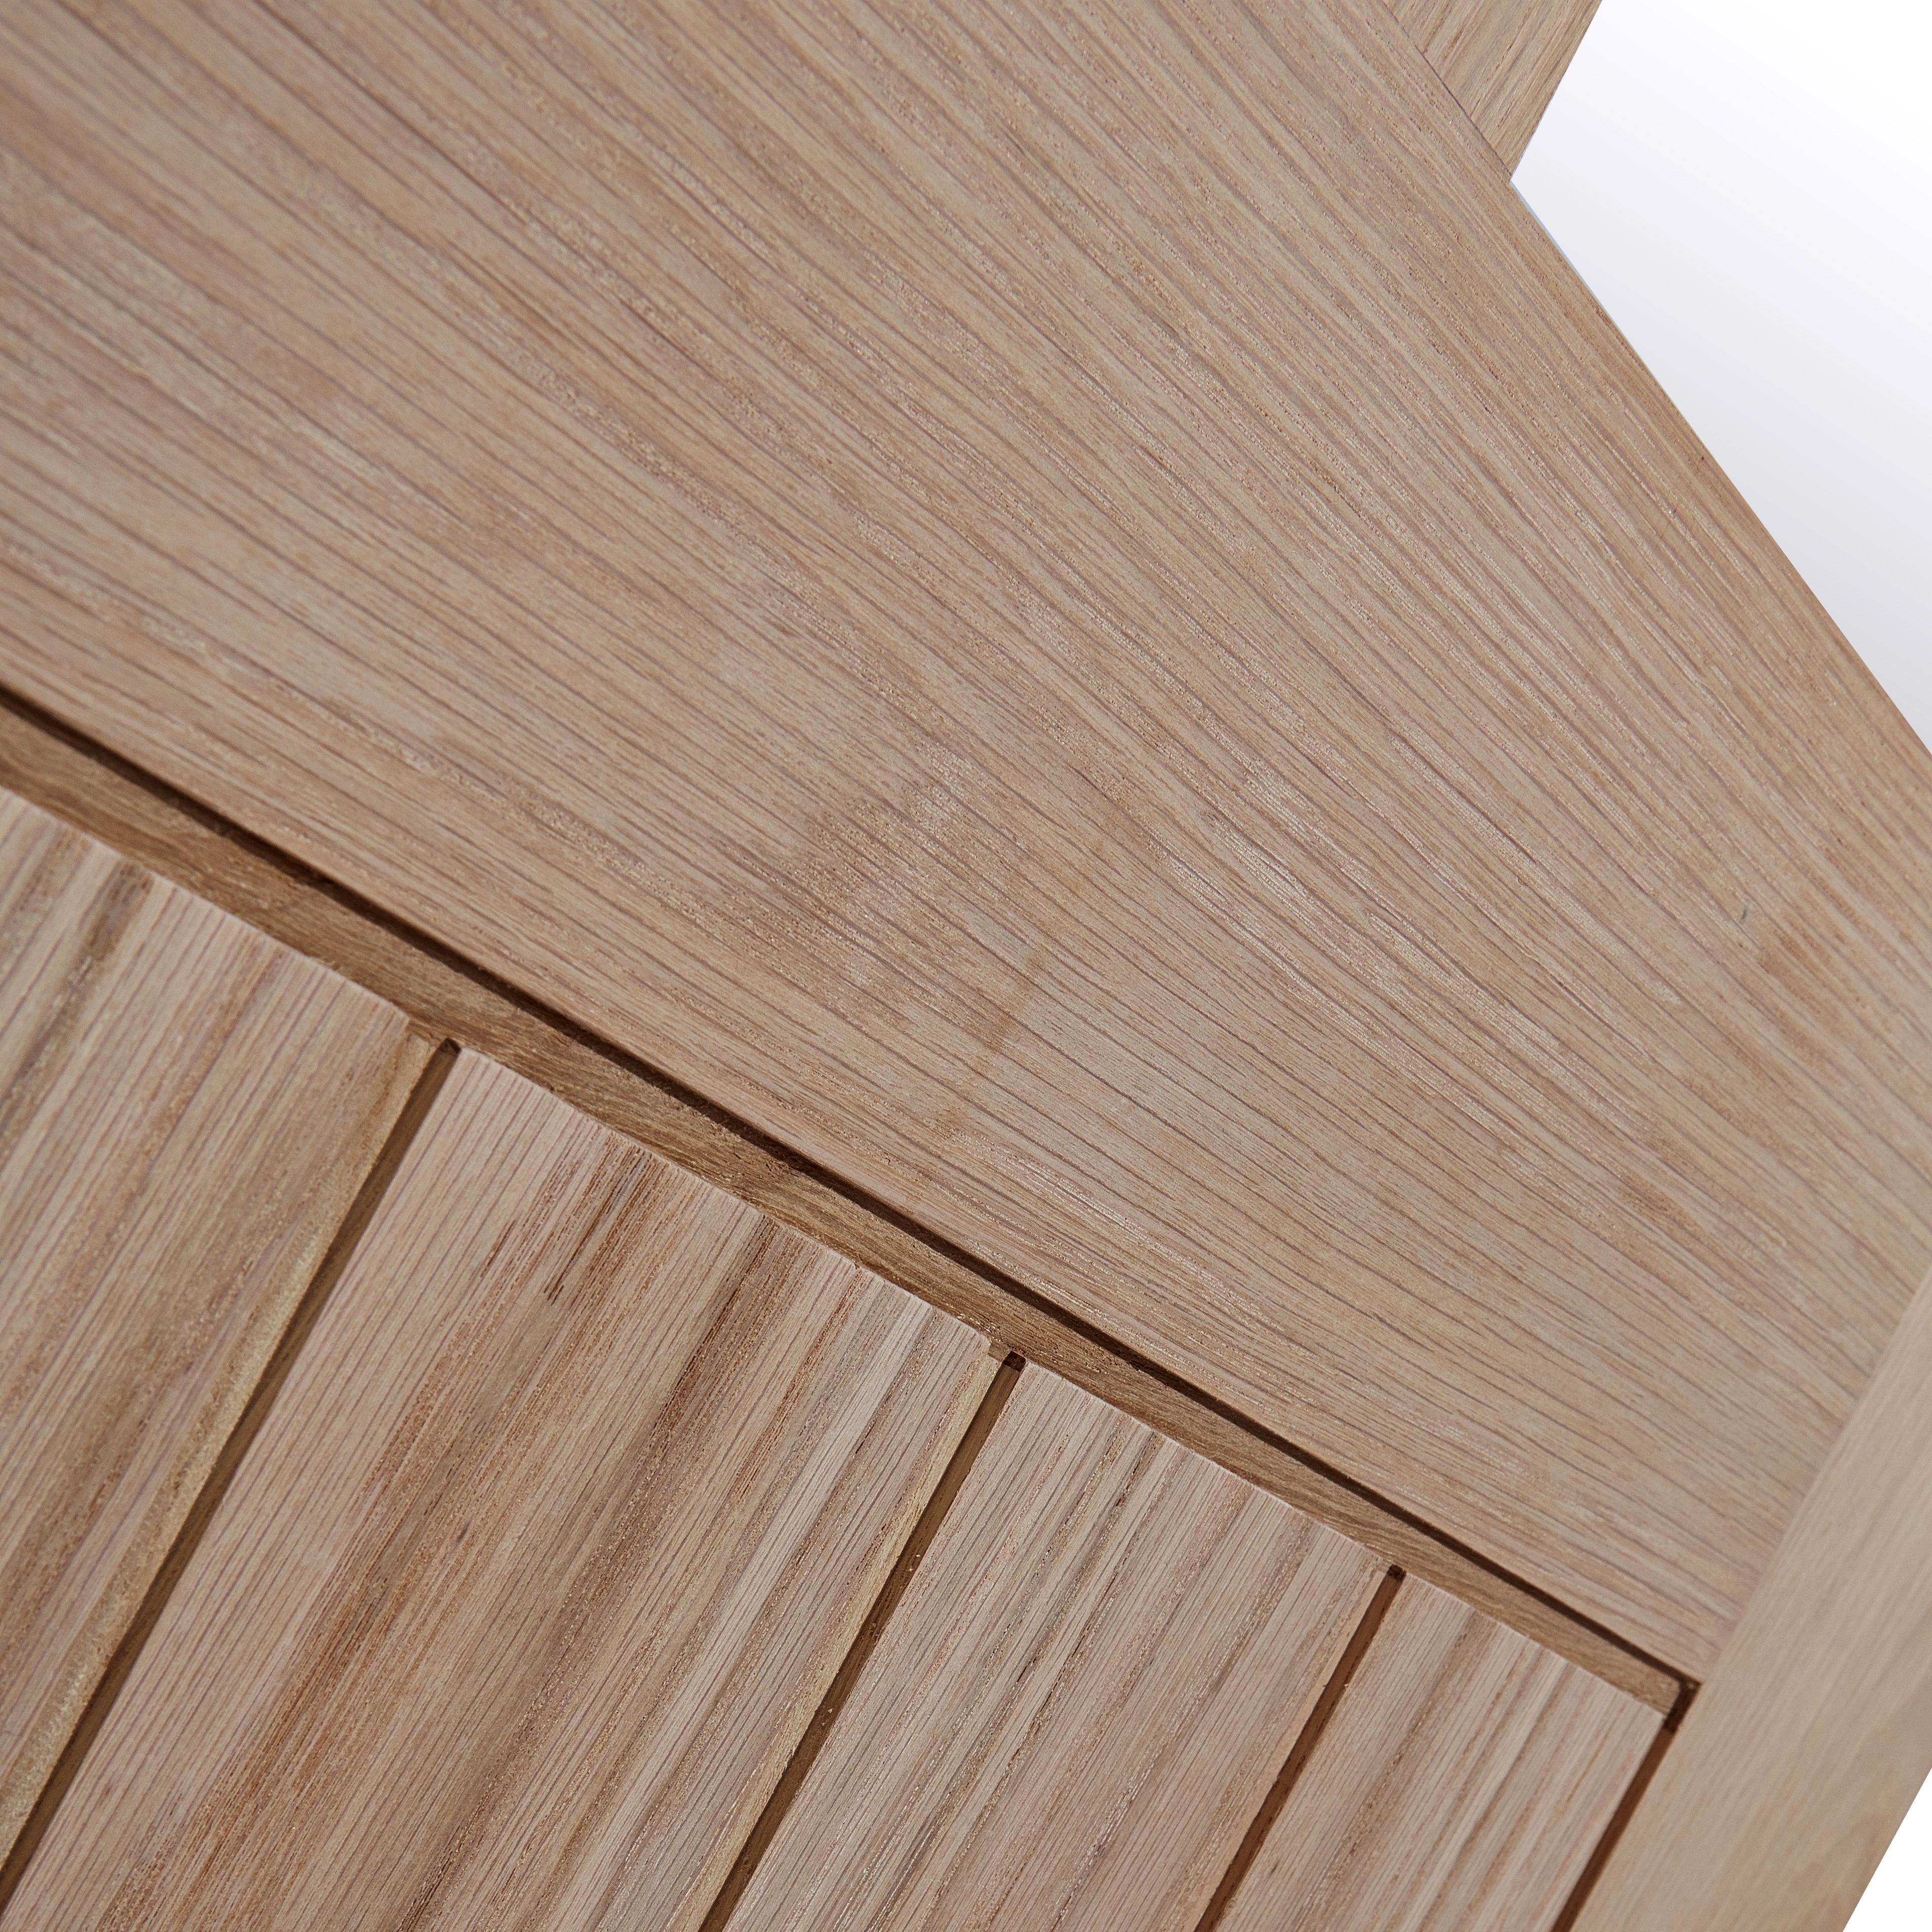 Fortia 2 Lite Clear Glazed Cottage Oak veneer Internal Door, (H)1981mm (W)838mm (T)35mm